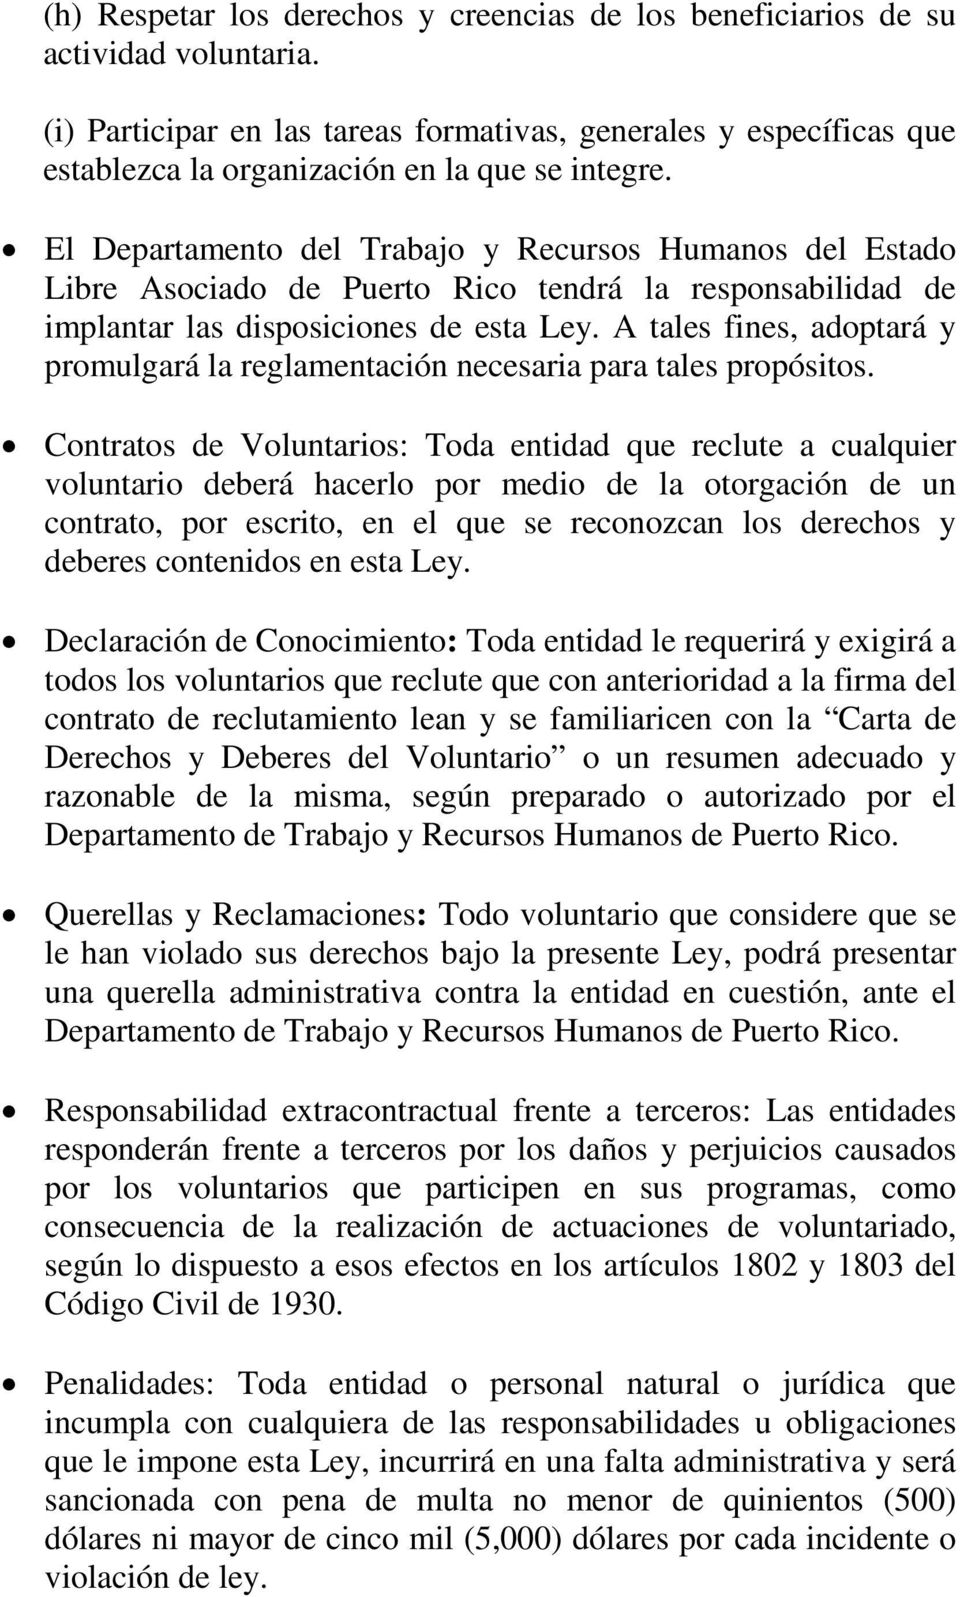 El Departamento del Trabajo y Recursos Humanos del Estado Libre Asociado de Puerto Rico tendrá la responsabilidad de implantar las disposiciones de esta Ley.